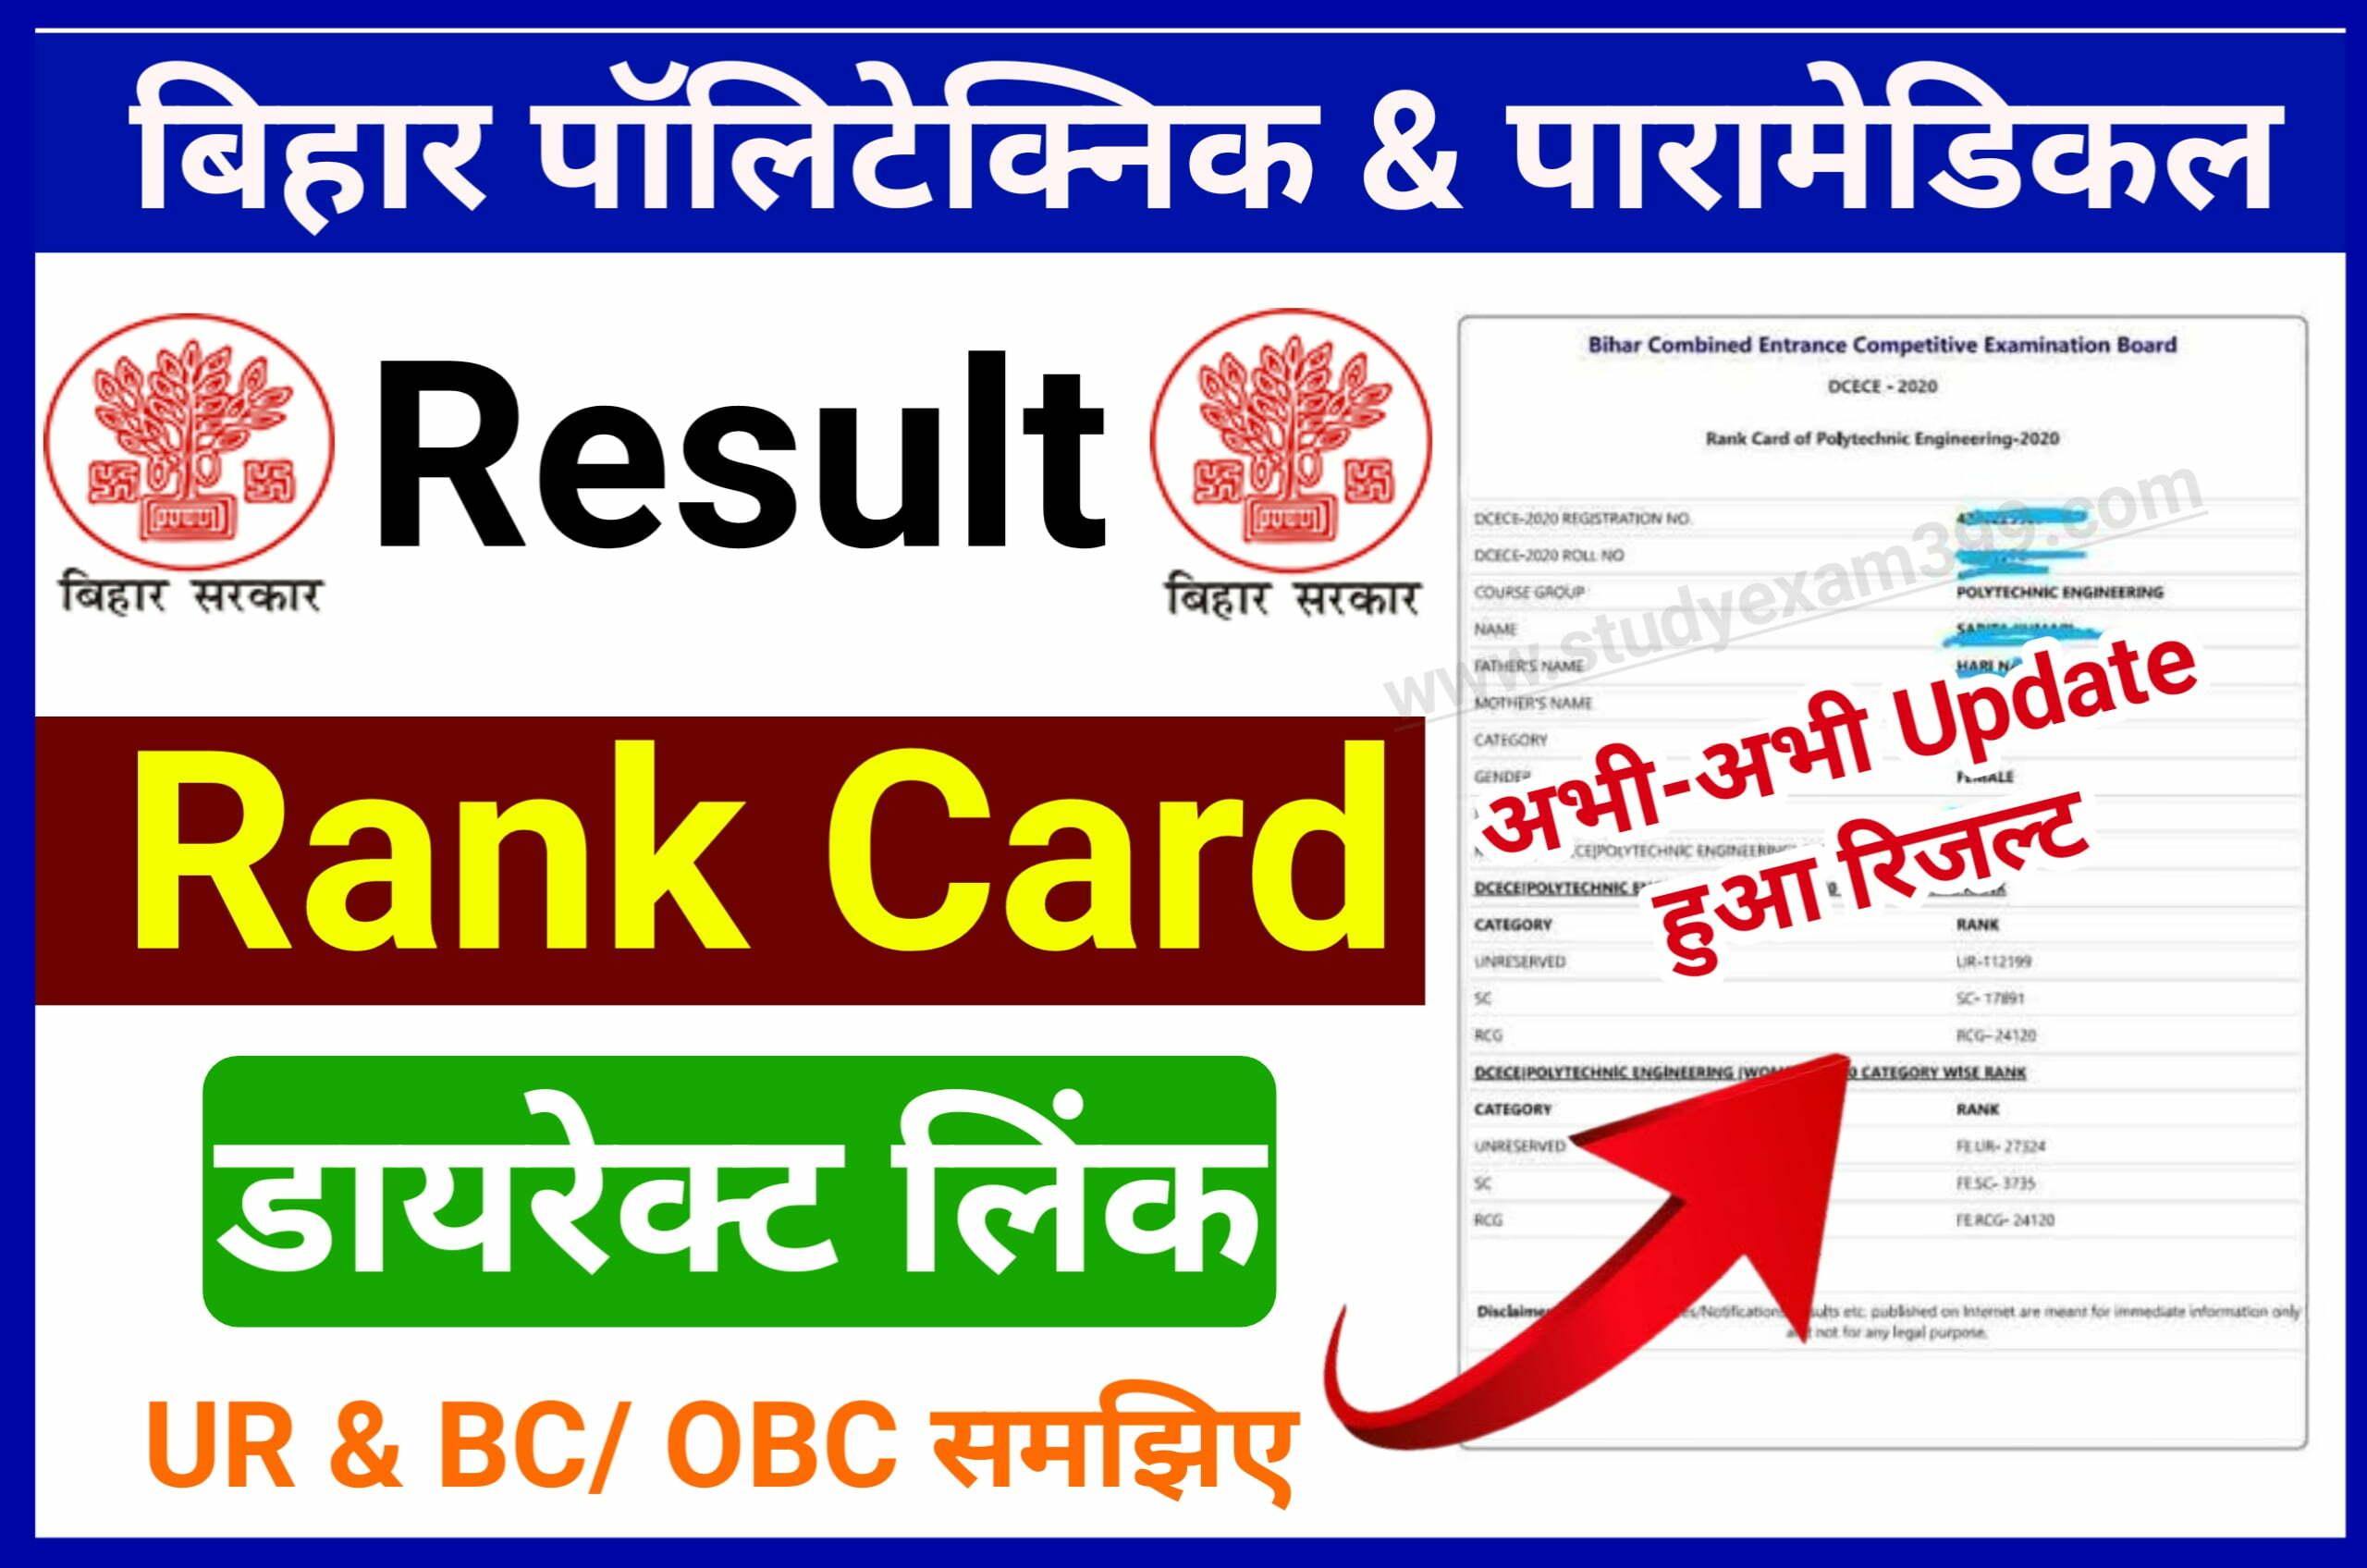 Bihar Polytechnic and Paramedical Result 2022 || Polytechnic & Paramedical Rank Card Download New Best Link Active - बिहार पॉलिटेक्निक और पारा मेडिकल रिजल्ट अभी-अभी हुआ घोषित इस लिंक से चेक करें अपना रिजल्ट